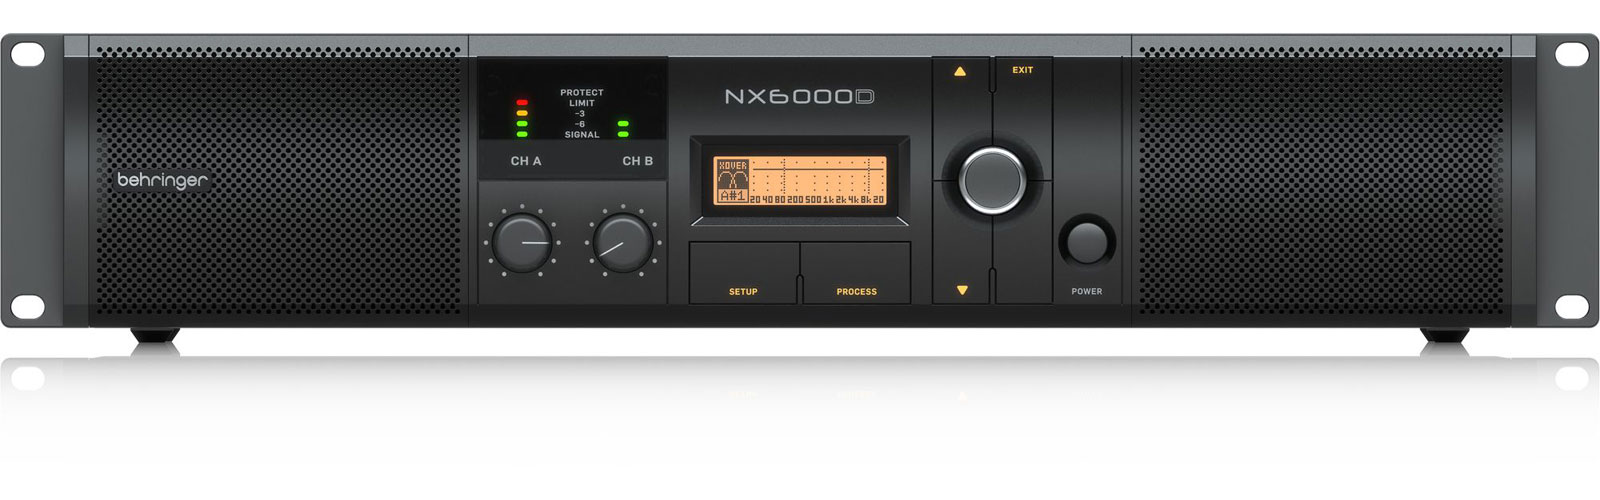 BEHRINGER NX6000D